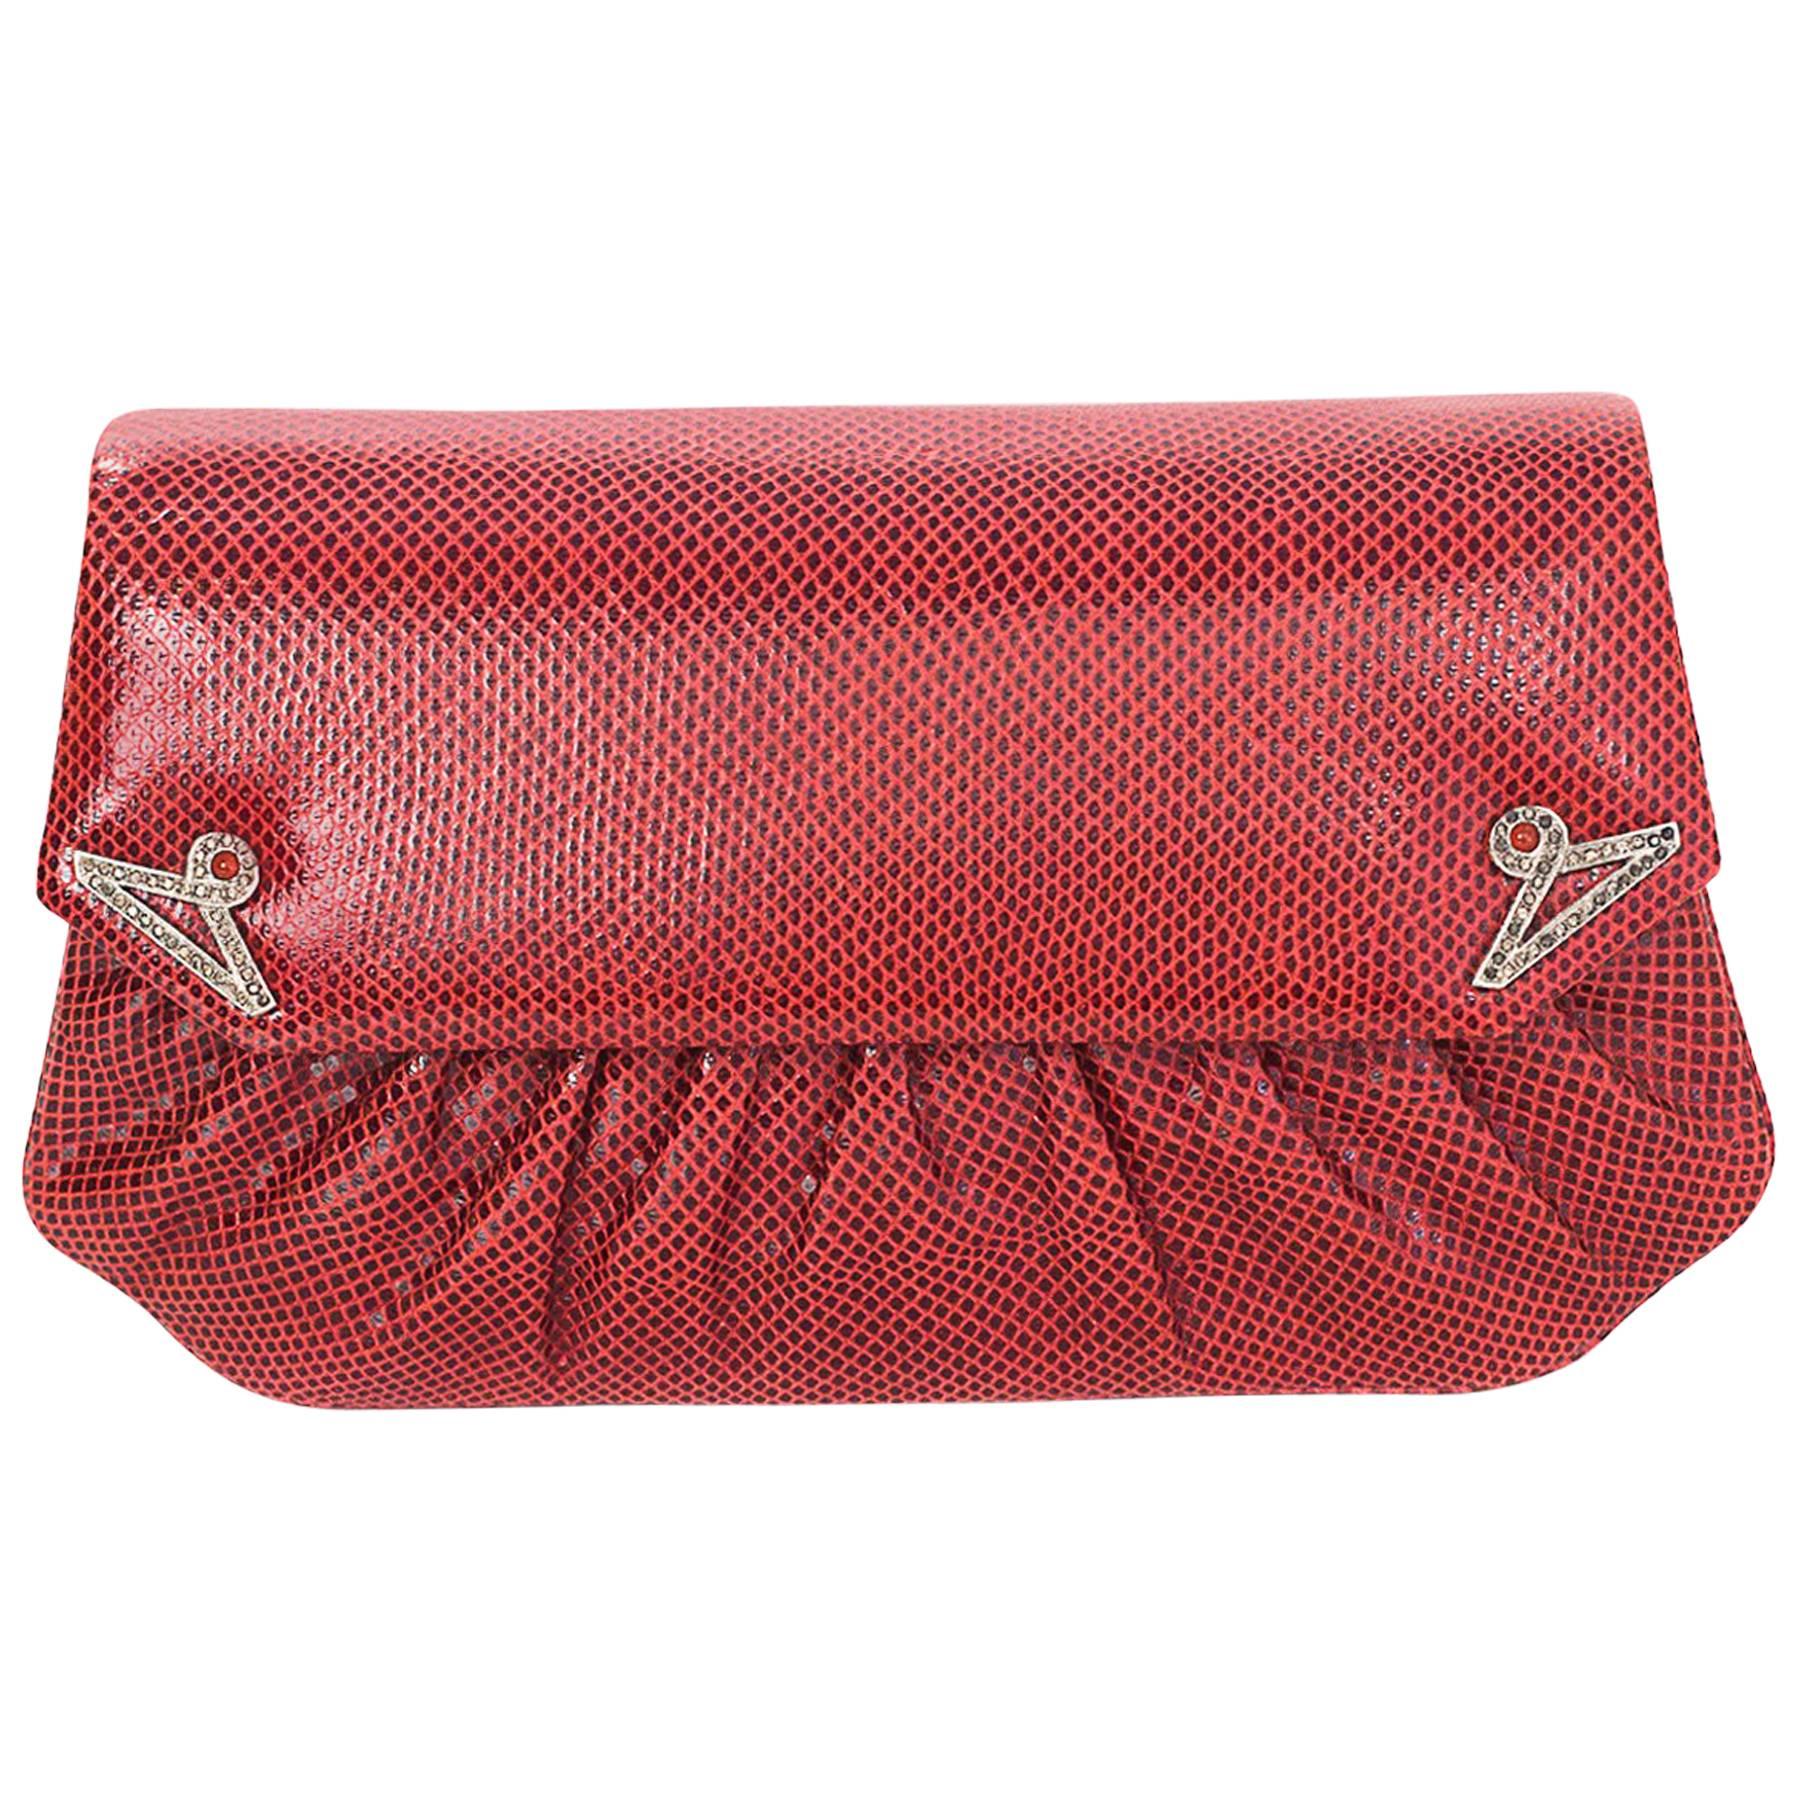 Judith Leiber Red Lizard Clutch/Crossbody Convertible Evening Bag